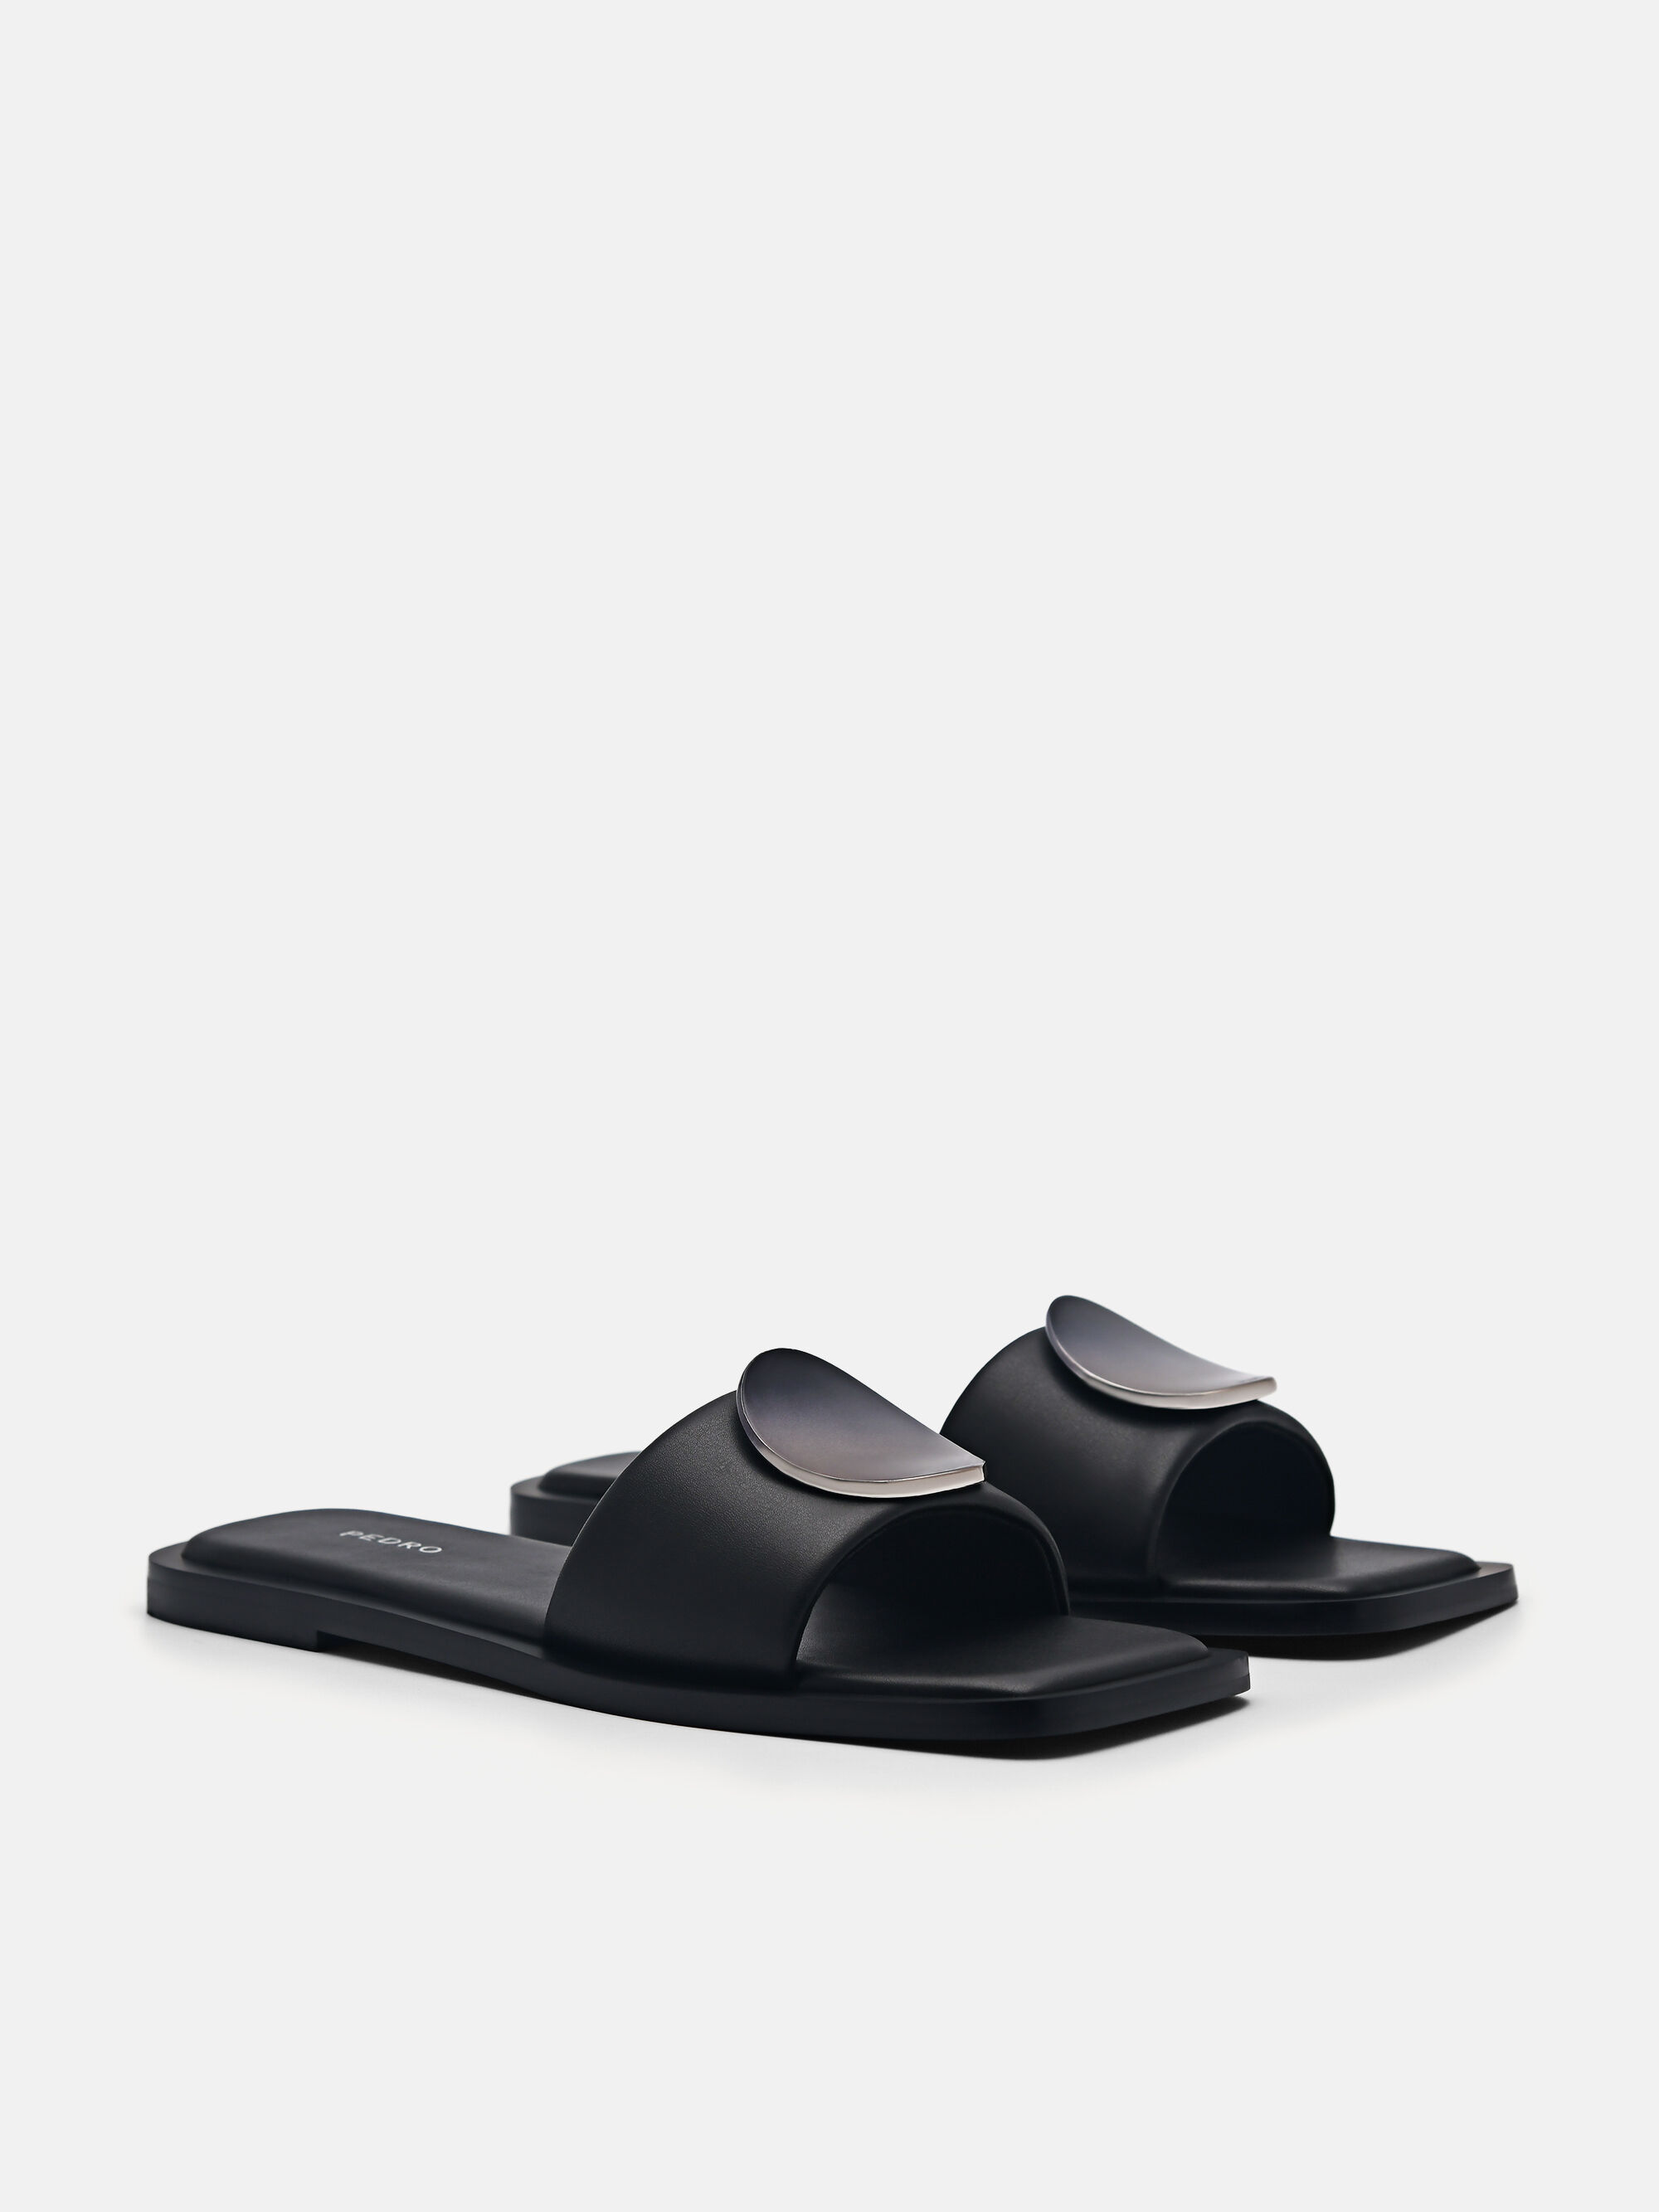 Vibe Square Toe Sandals, Black